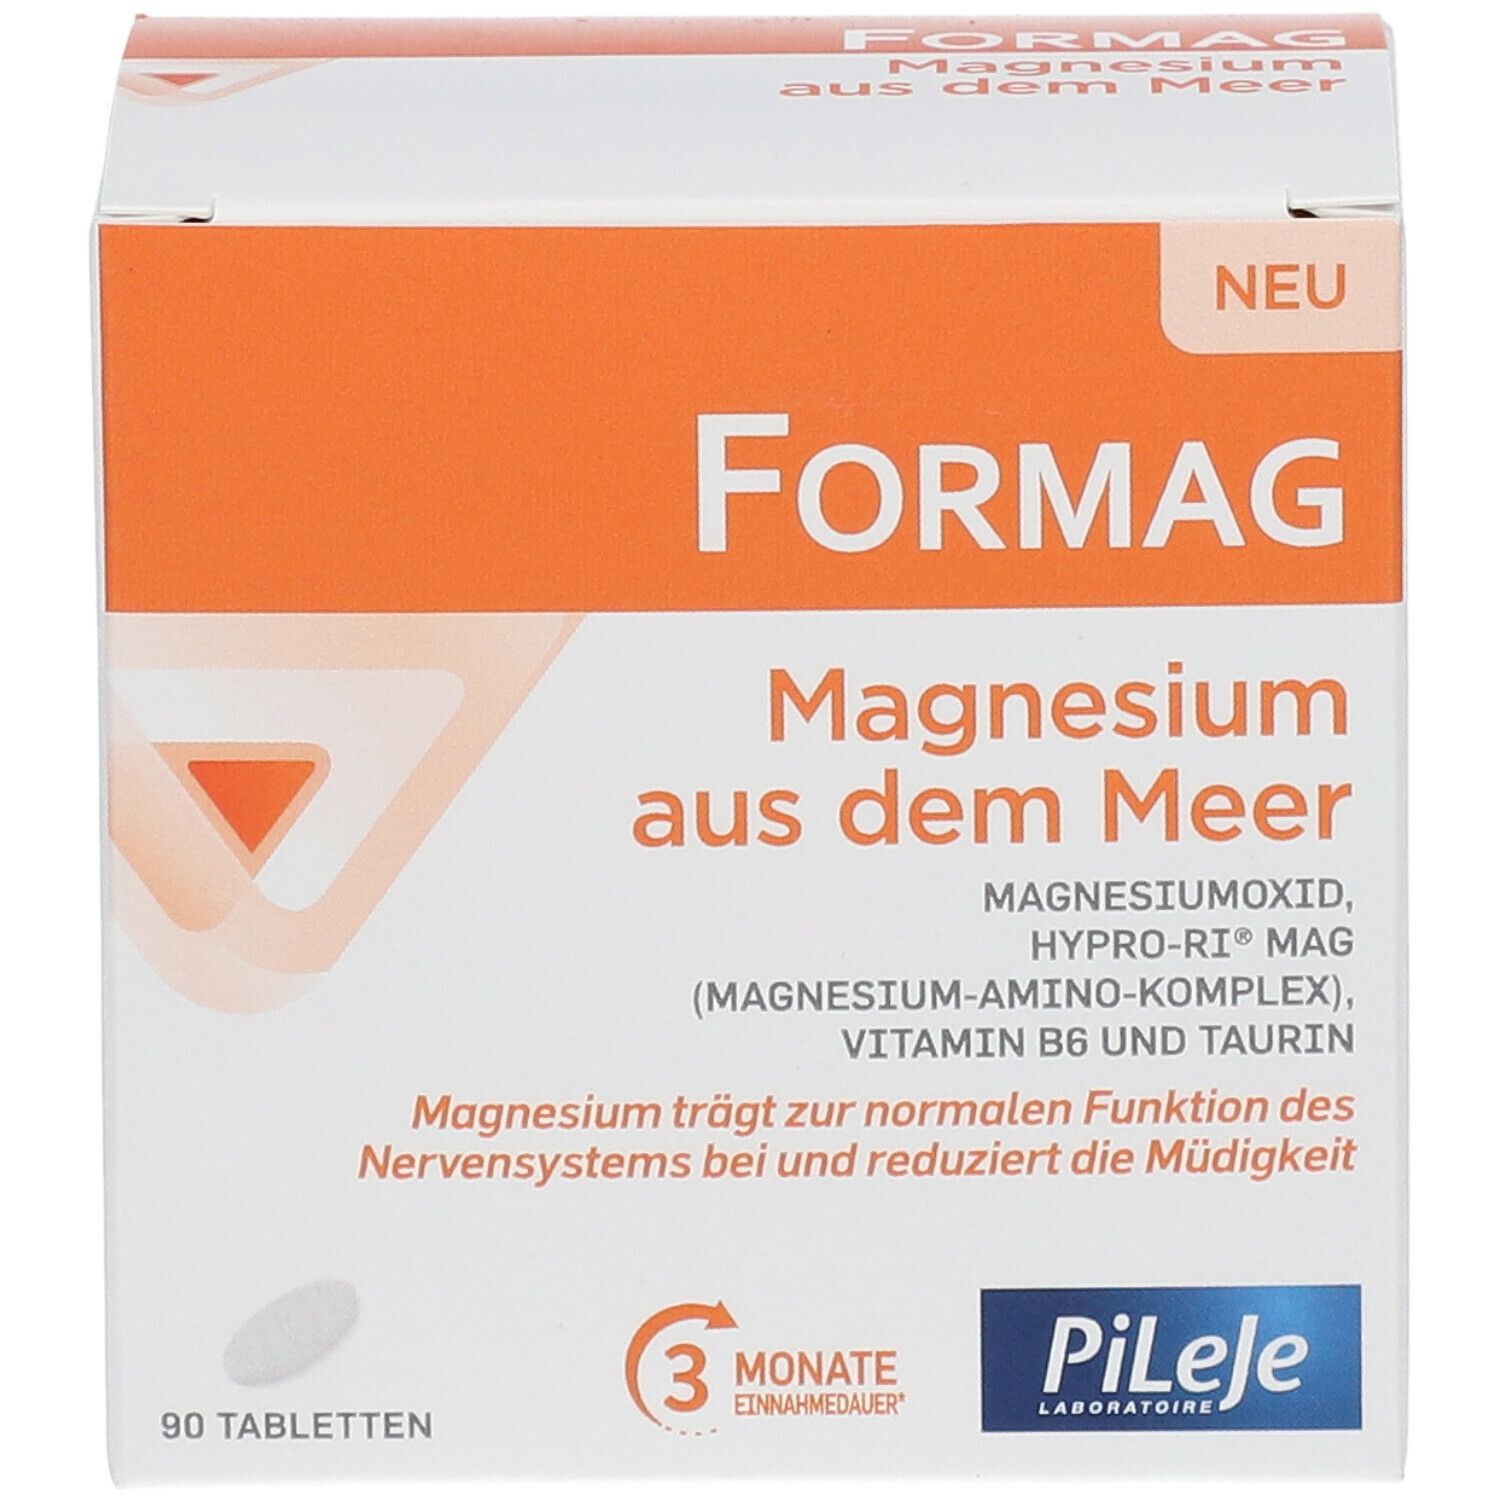 FORMAG Magnesium aus dem Meer